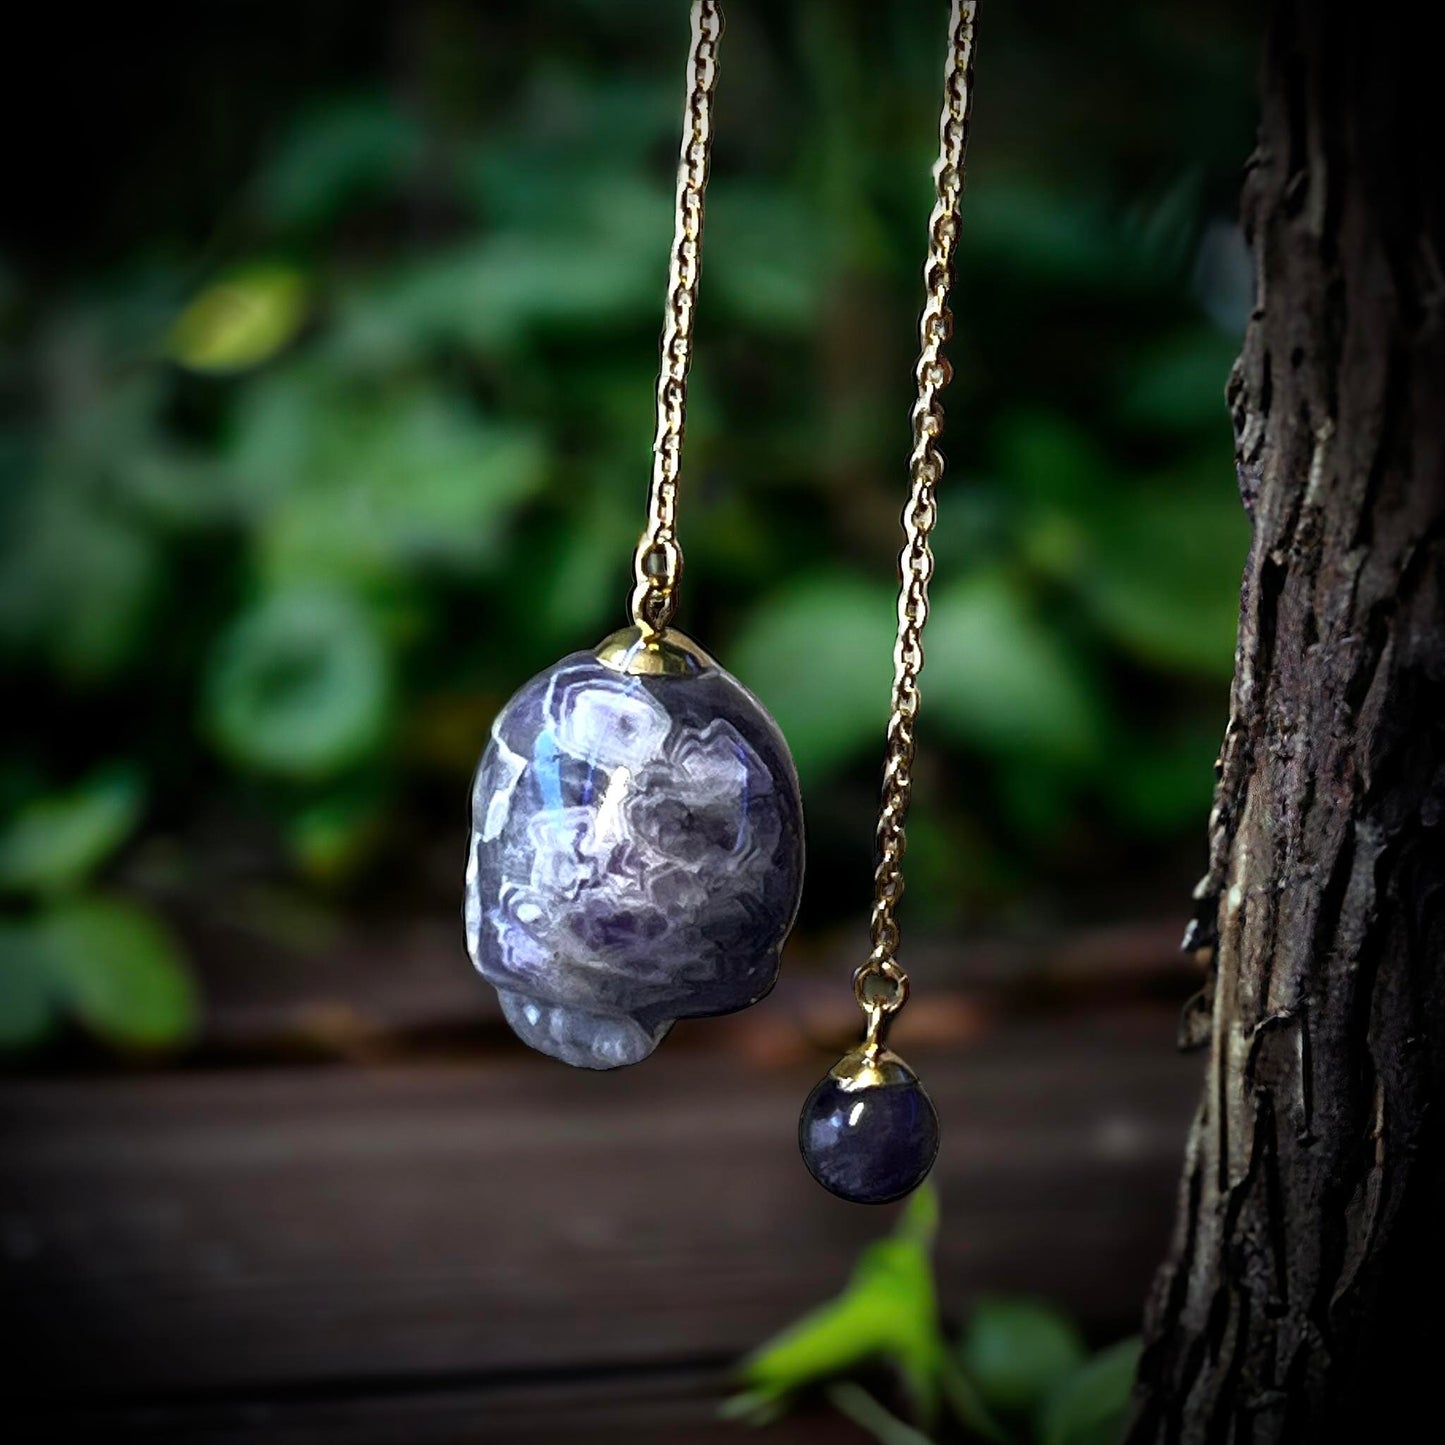 Gemstone Pendulum Skull Amethyst Curiosity, Oddity, Spells, Unique Gift Idea, Witchcraft, Rituals, Spirit Boards, Quartz